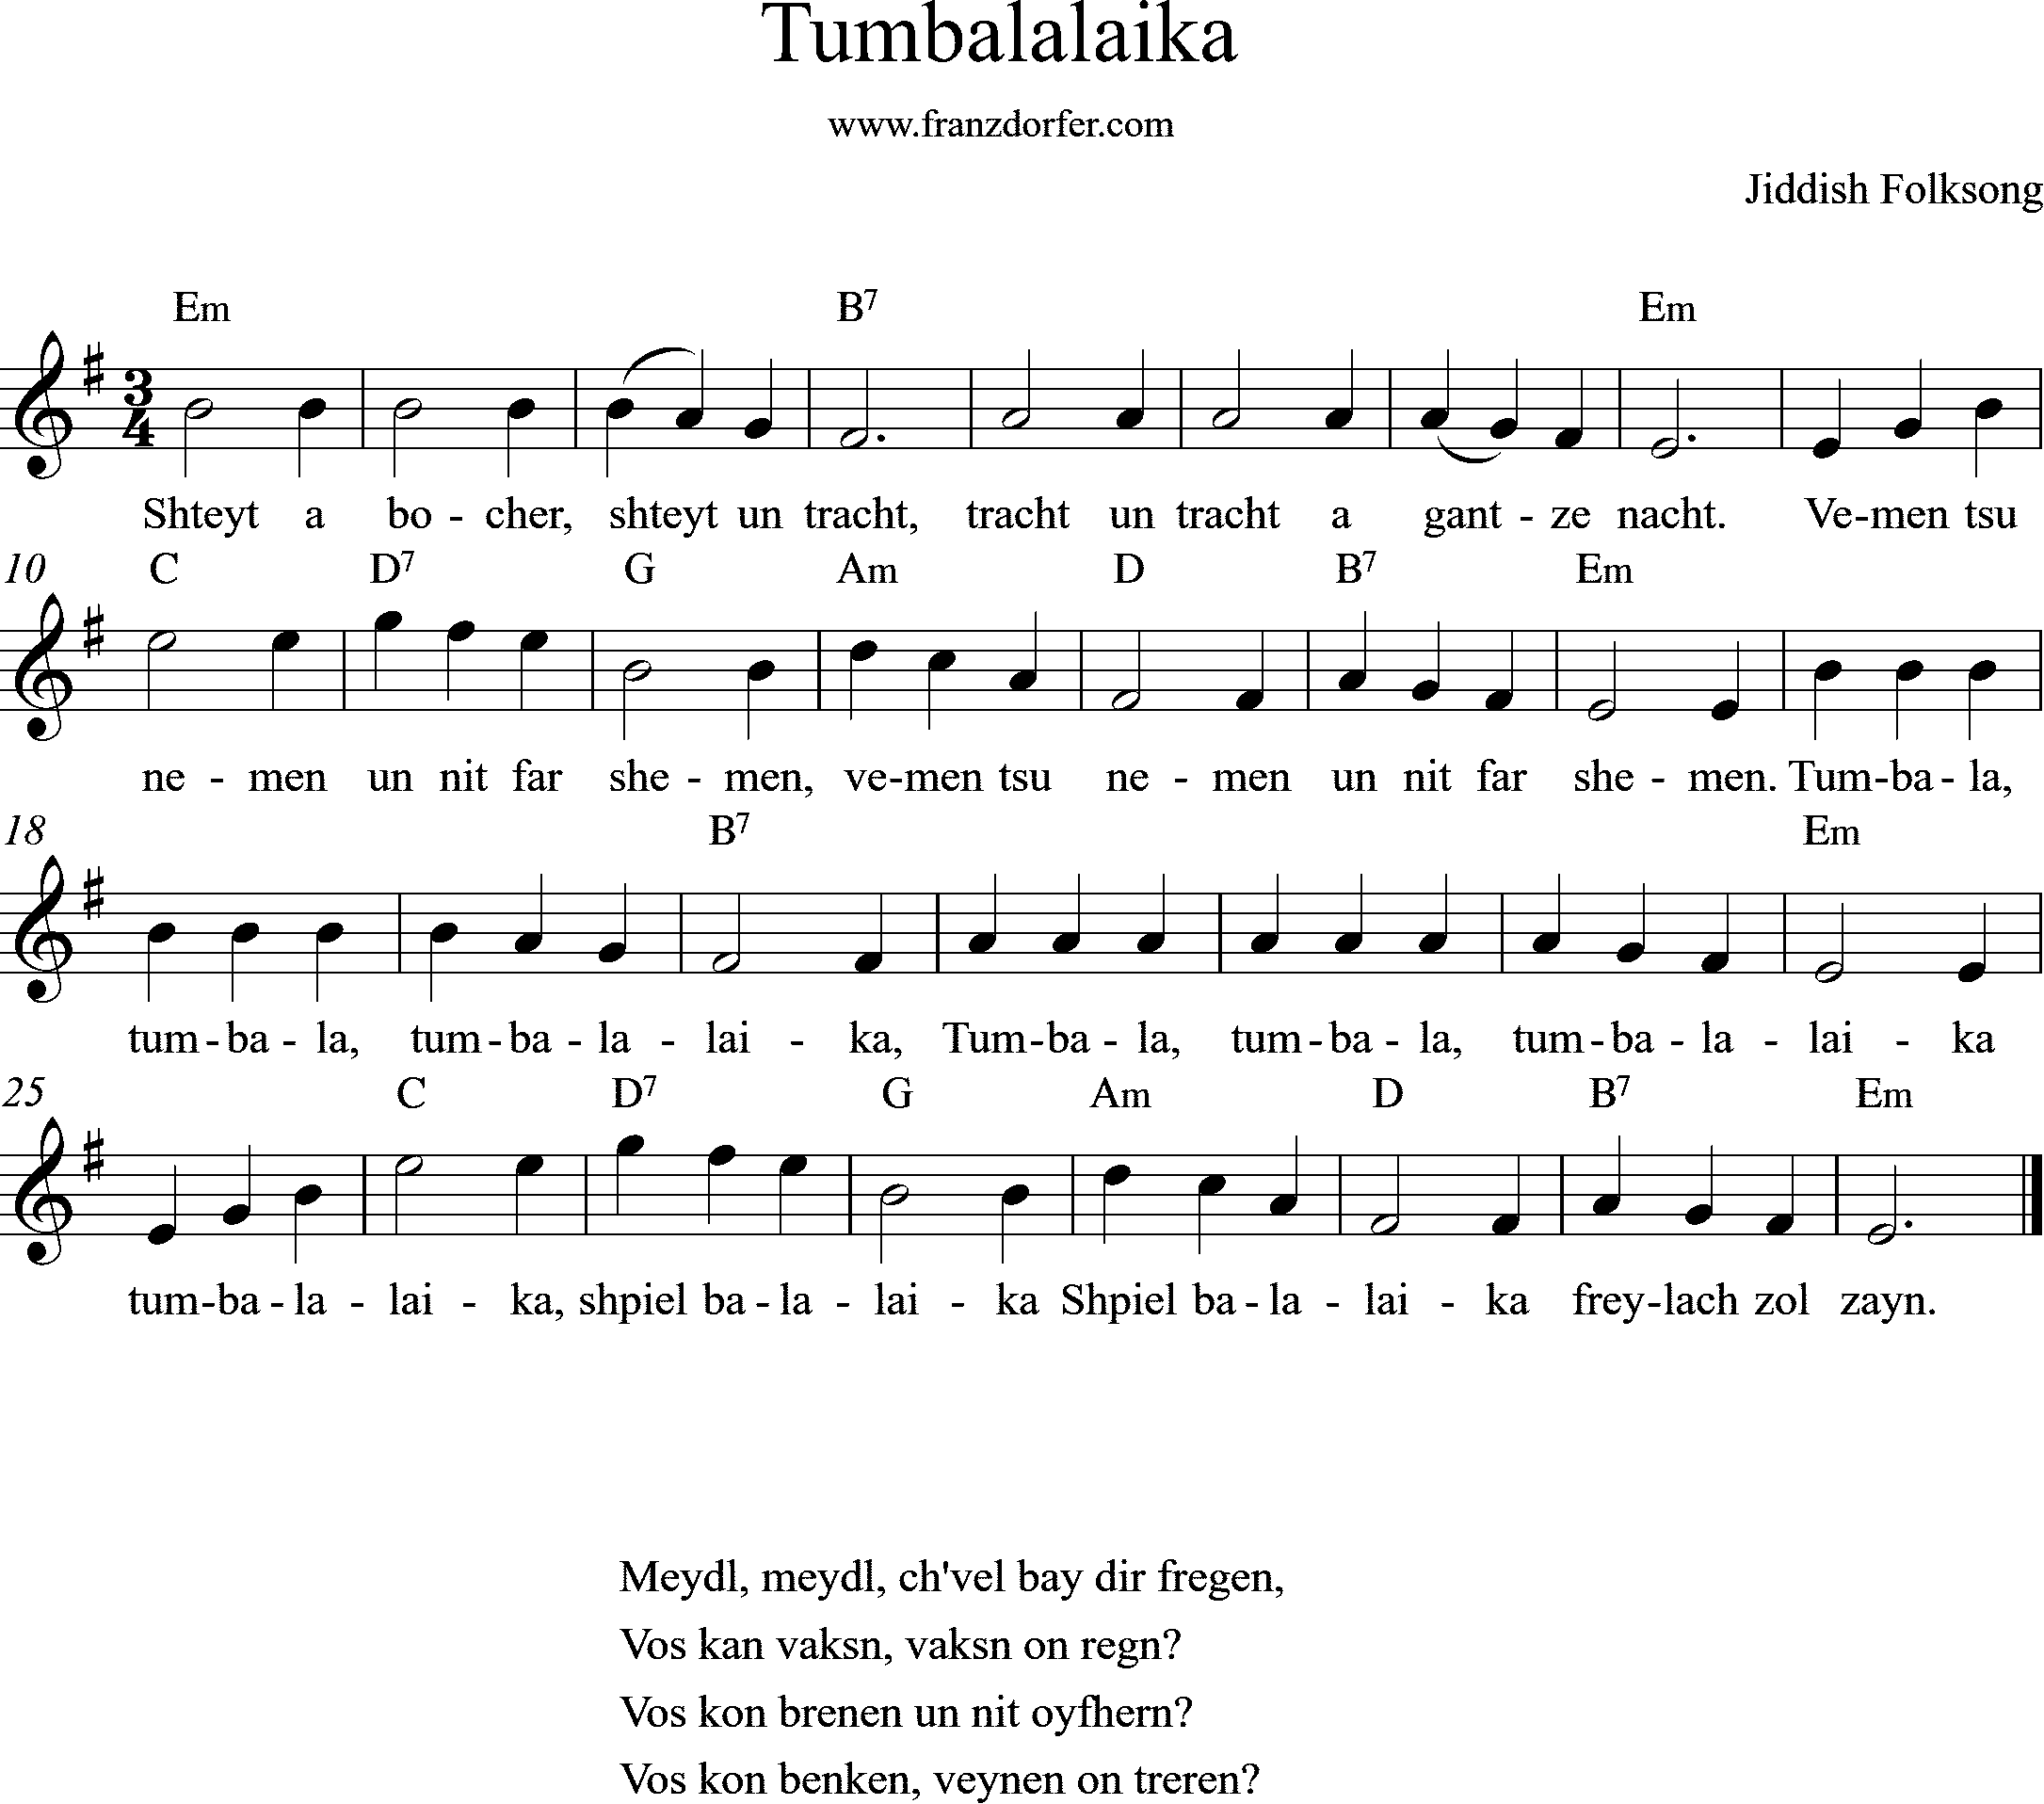 Leadsheet, Tumbalaika, e-minor